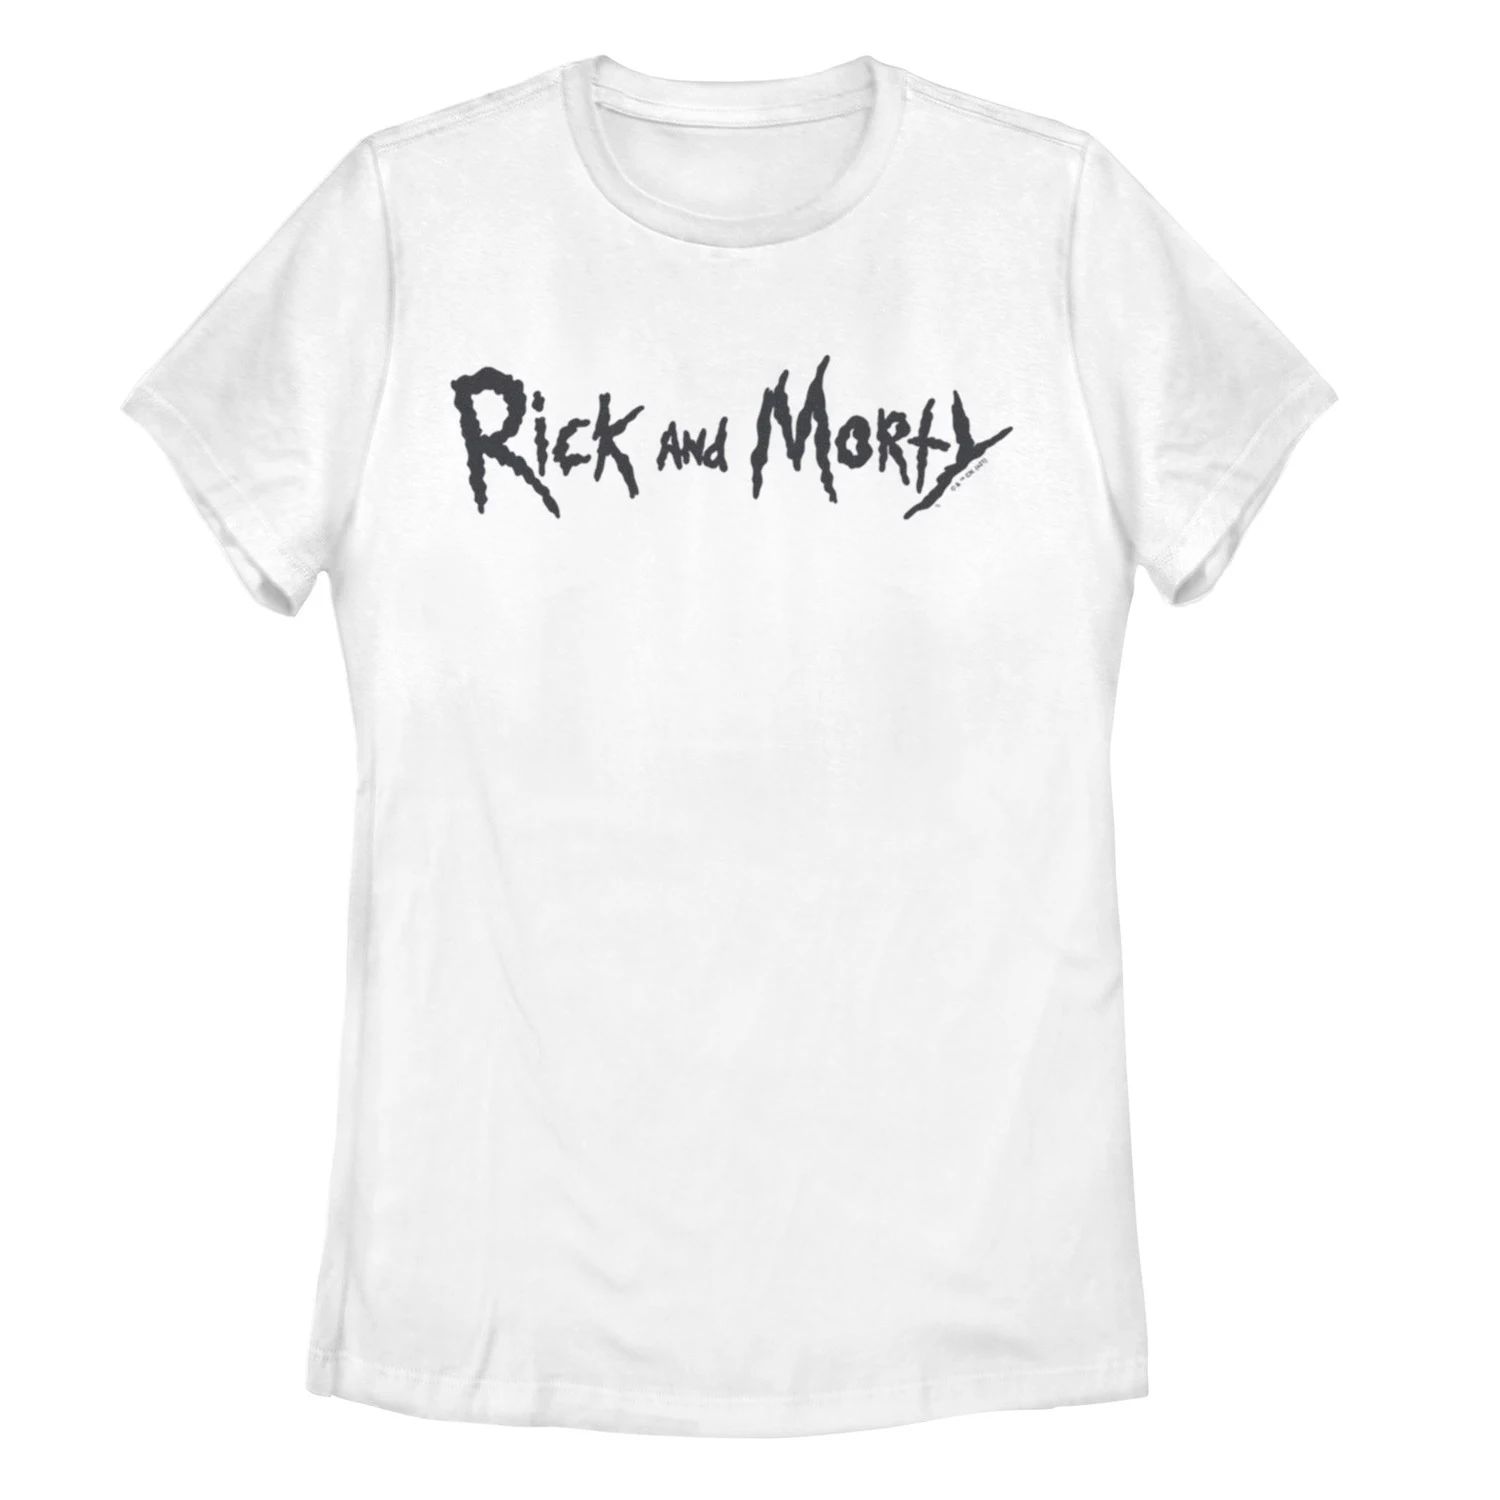 Простая черная футболка с текстовым рисунком «Рик и Морти» для юниоров Licensed Character